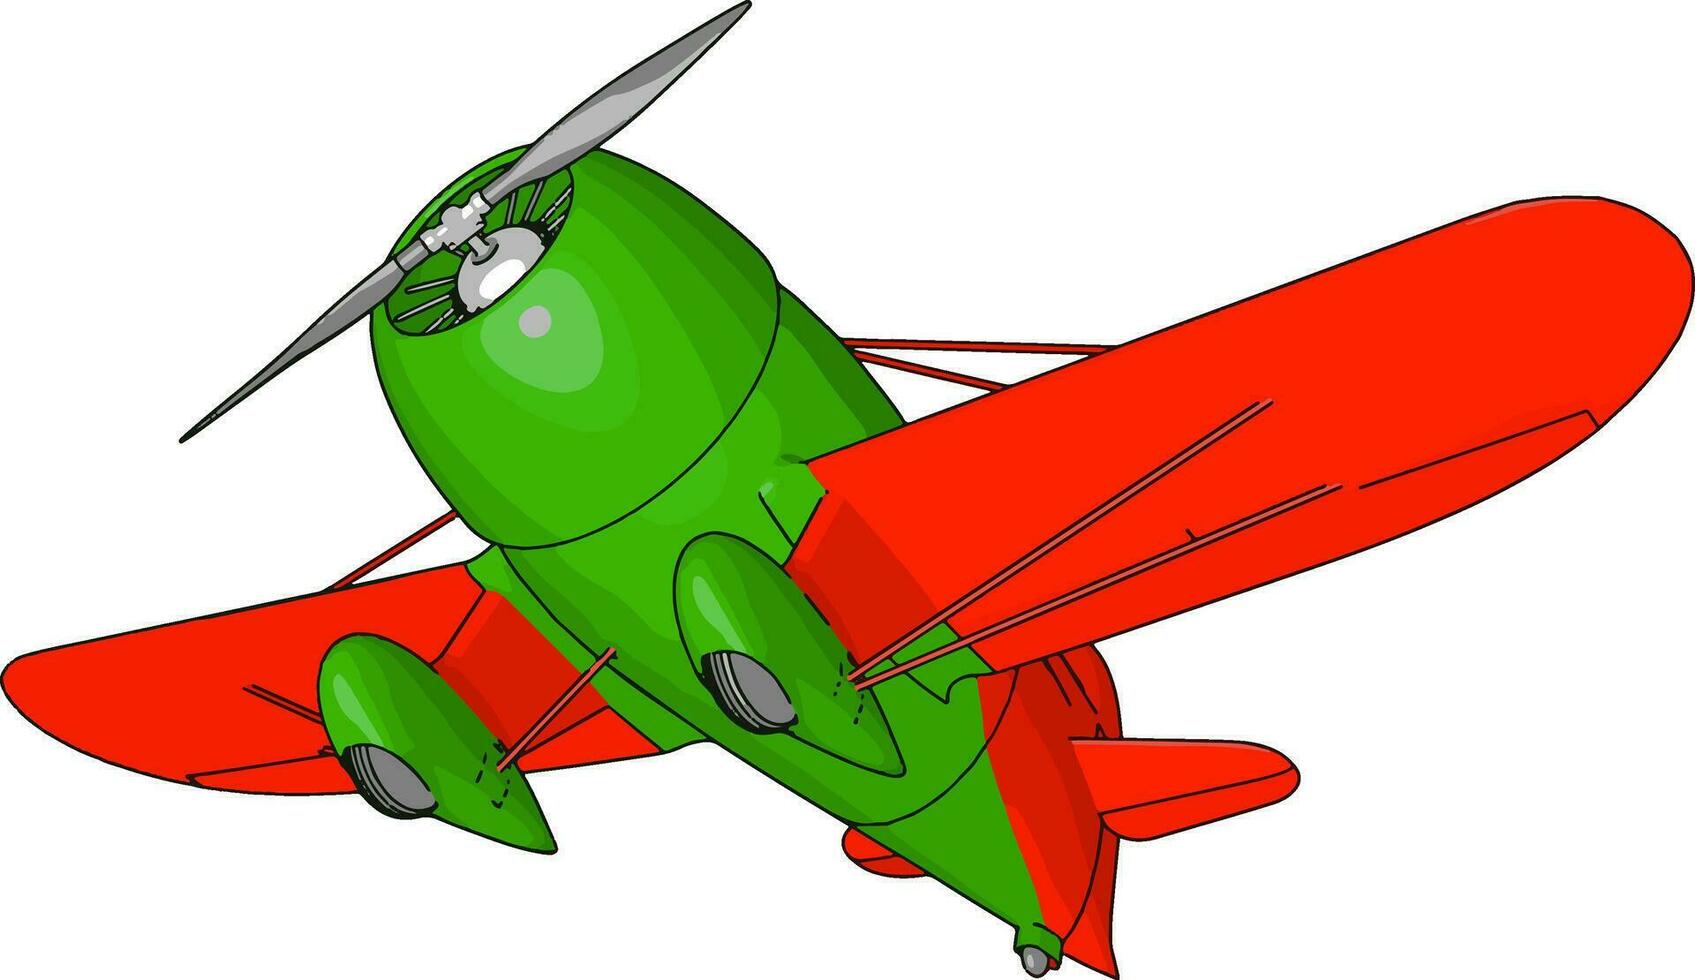 avião retrô velho verde e vermelho, ilustração, vetor em fundo branco.